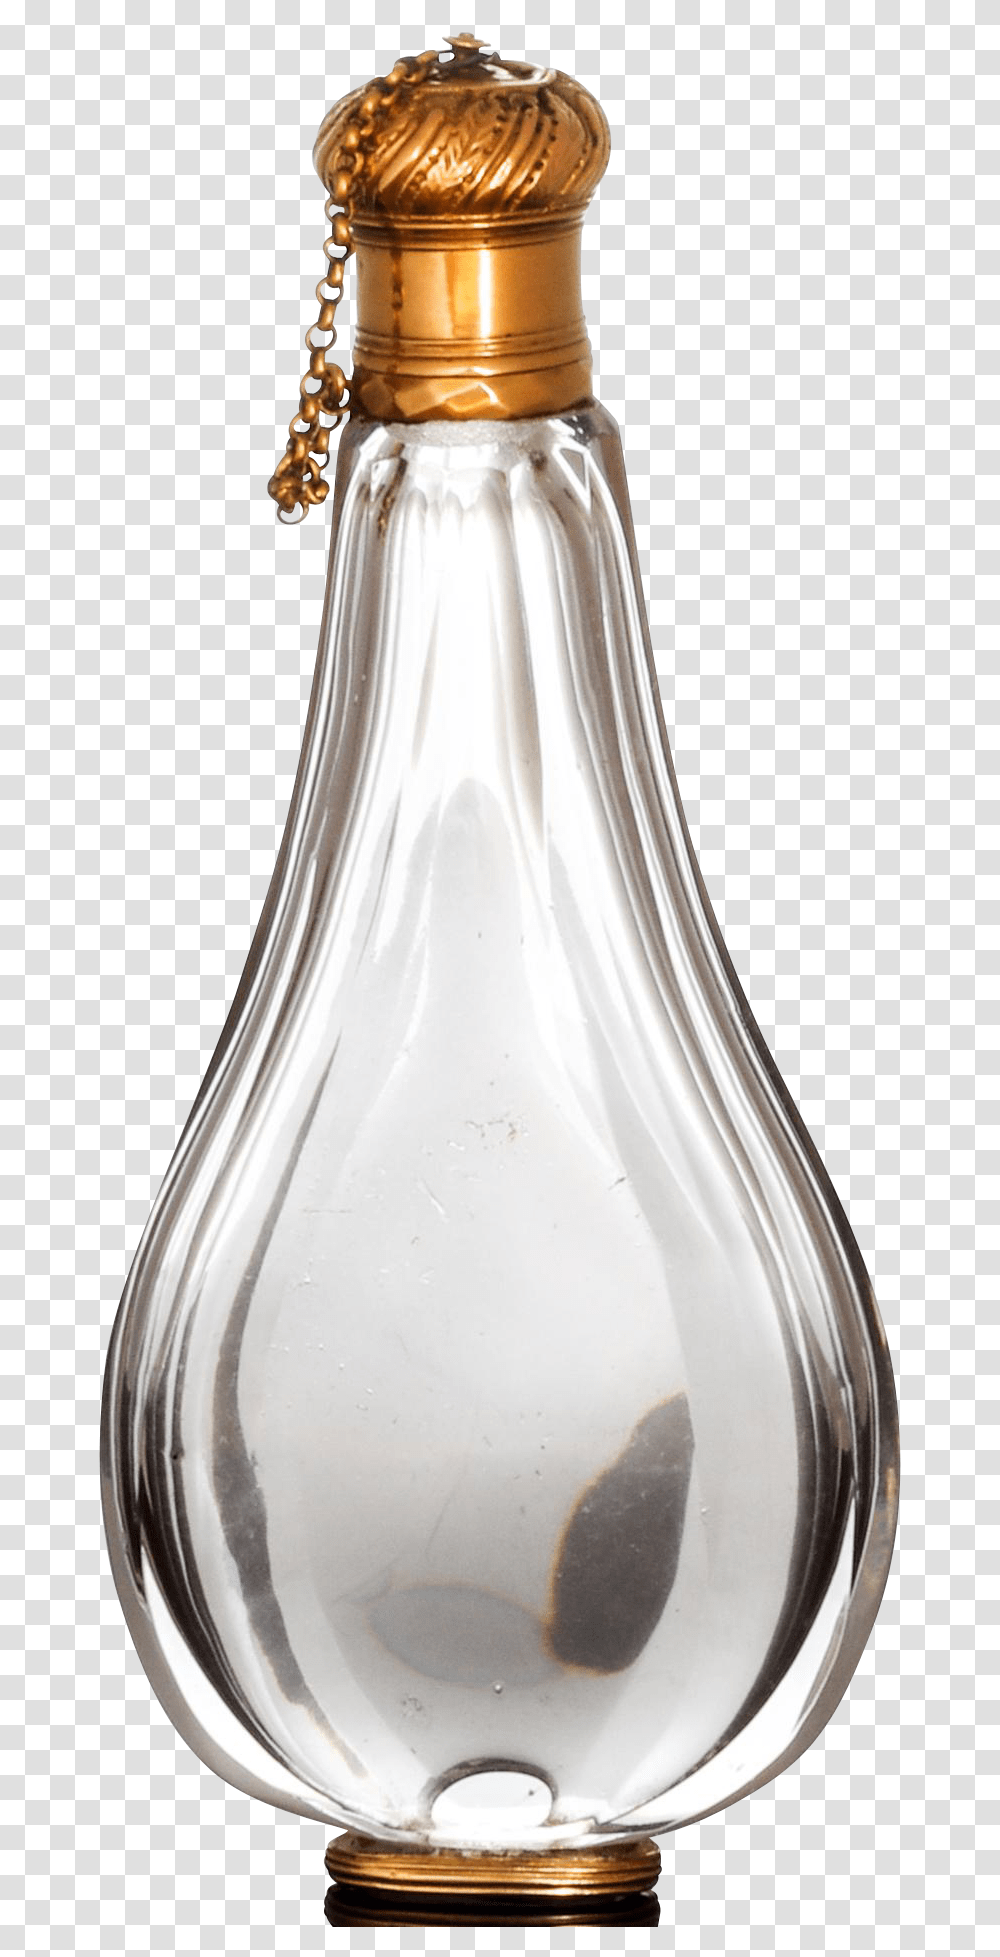 Download Gold Mounted Antique Teardrop Perfume Bottle France Perfume Glass Bottle Background, Milk, Beverage, Vase, Jar Transparent Png